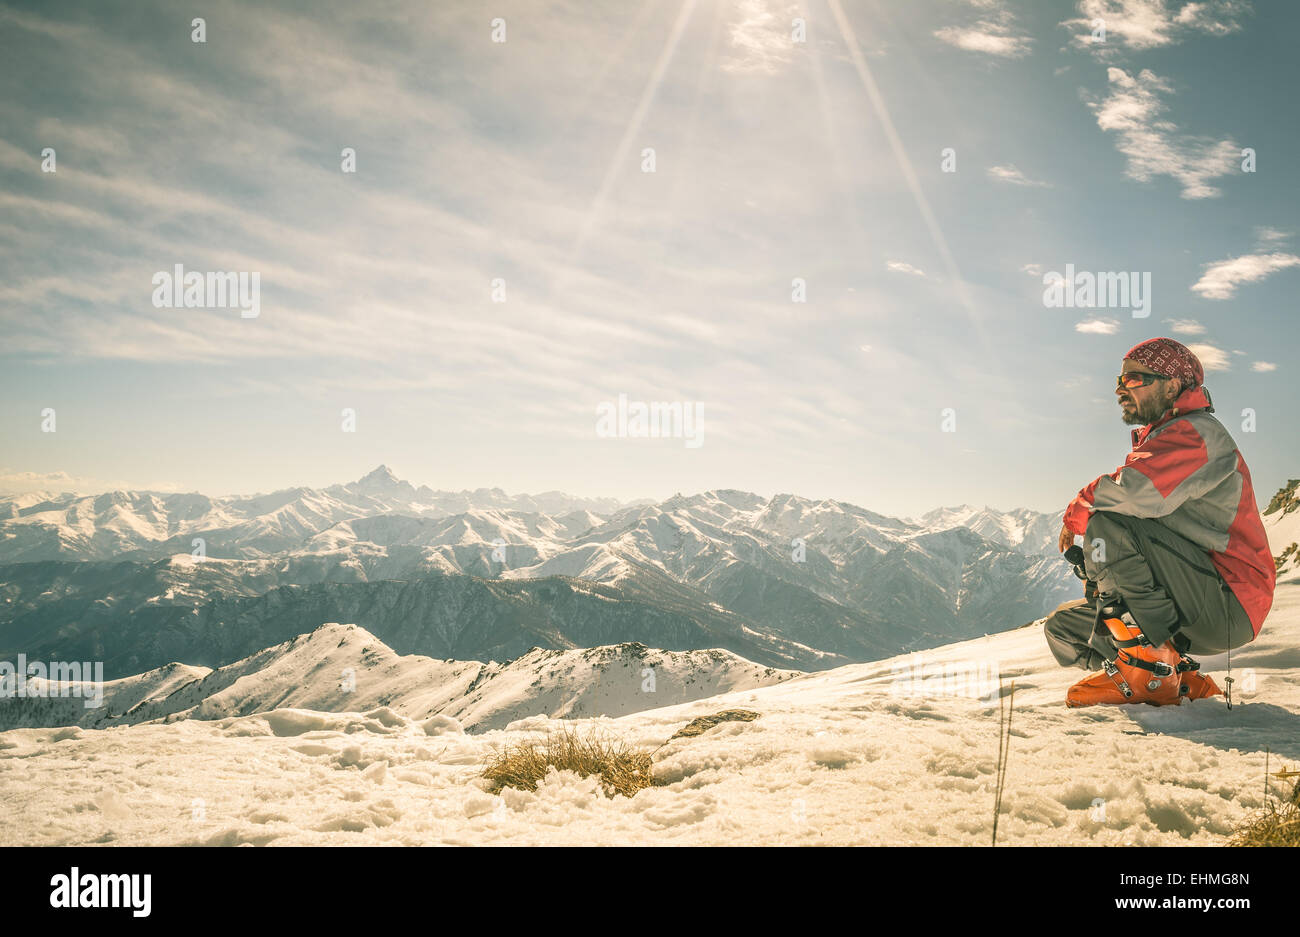 Bergsteiger auf den Gipfel des Berges. Bei Gegenlicht, herrlichem Panoramablick des Alpenbogens erschossen. Konzept des Erfolgs und der Eroberung Stockfoto